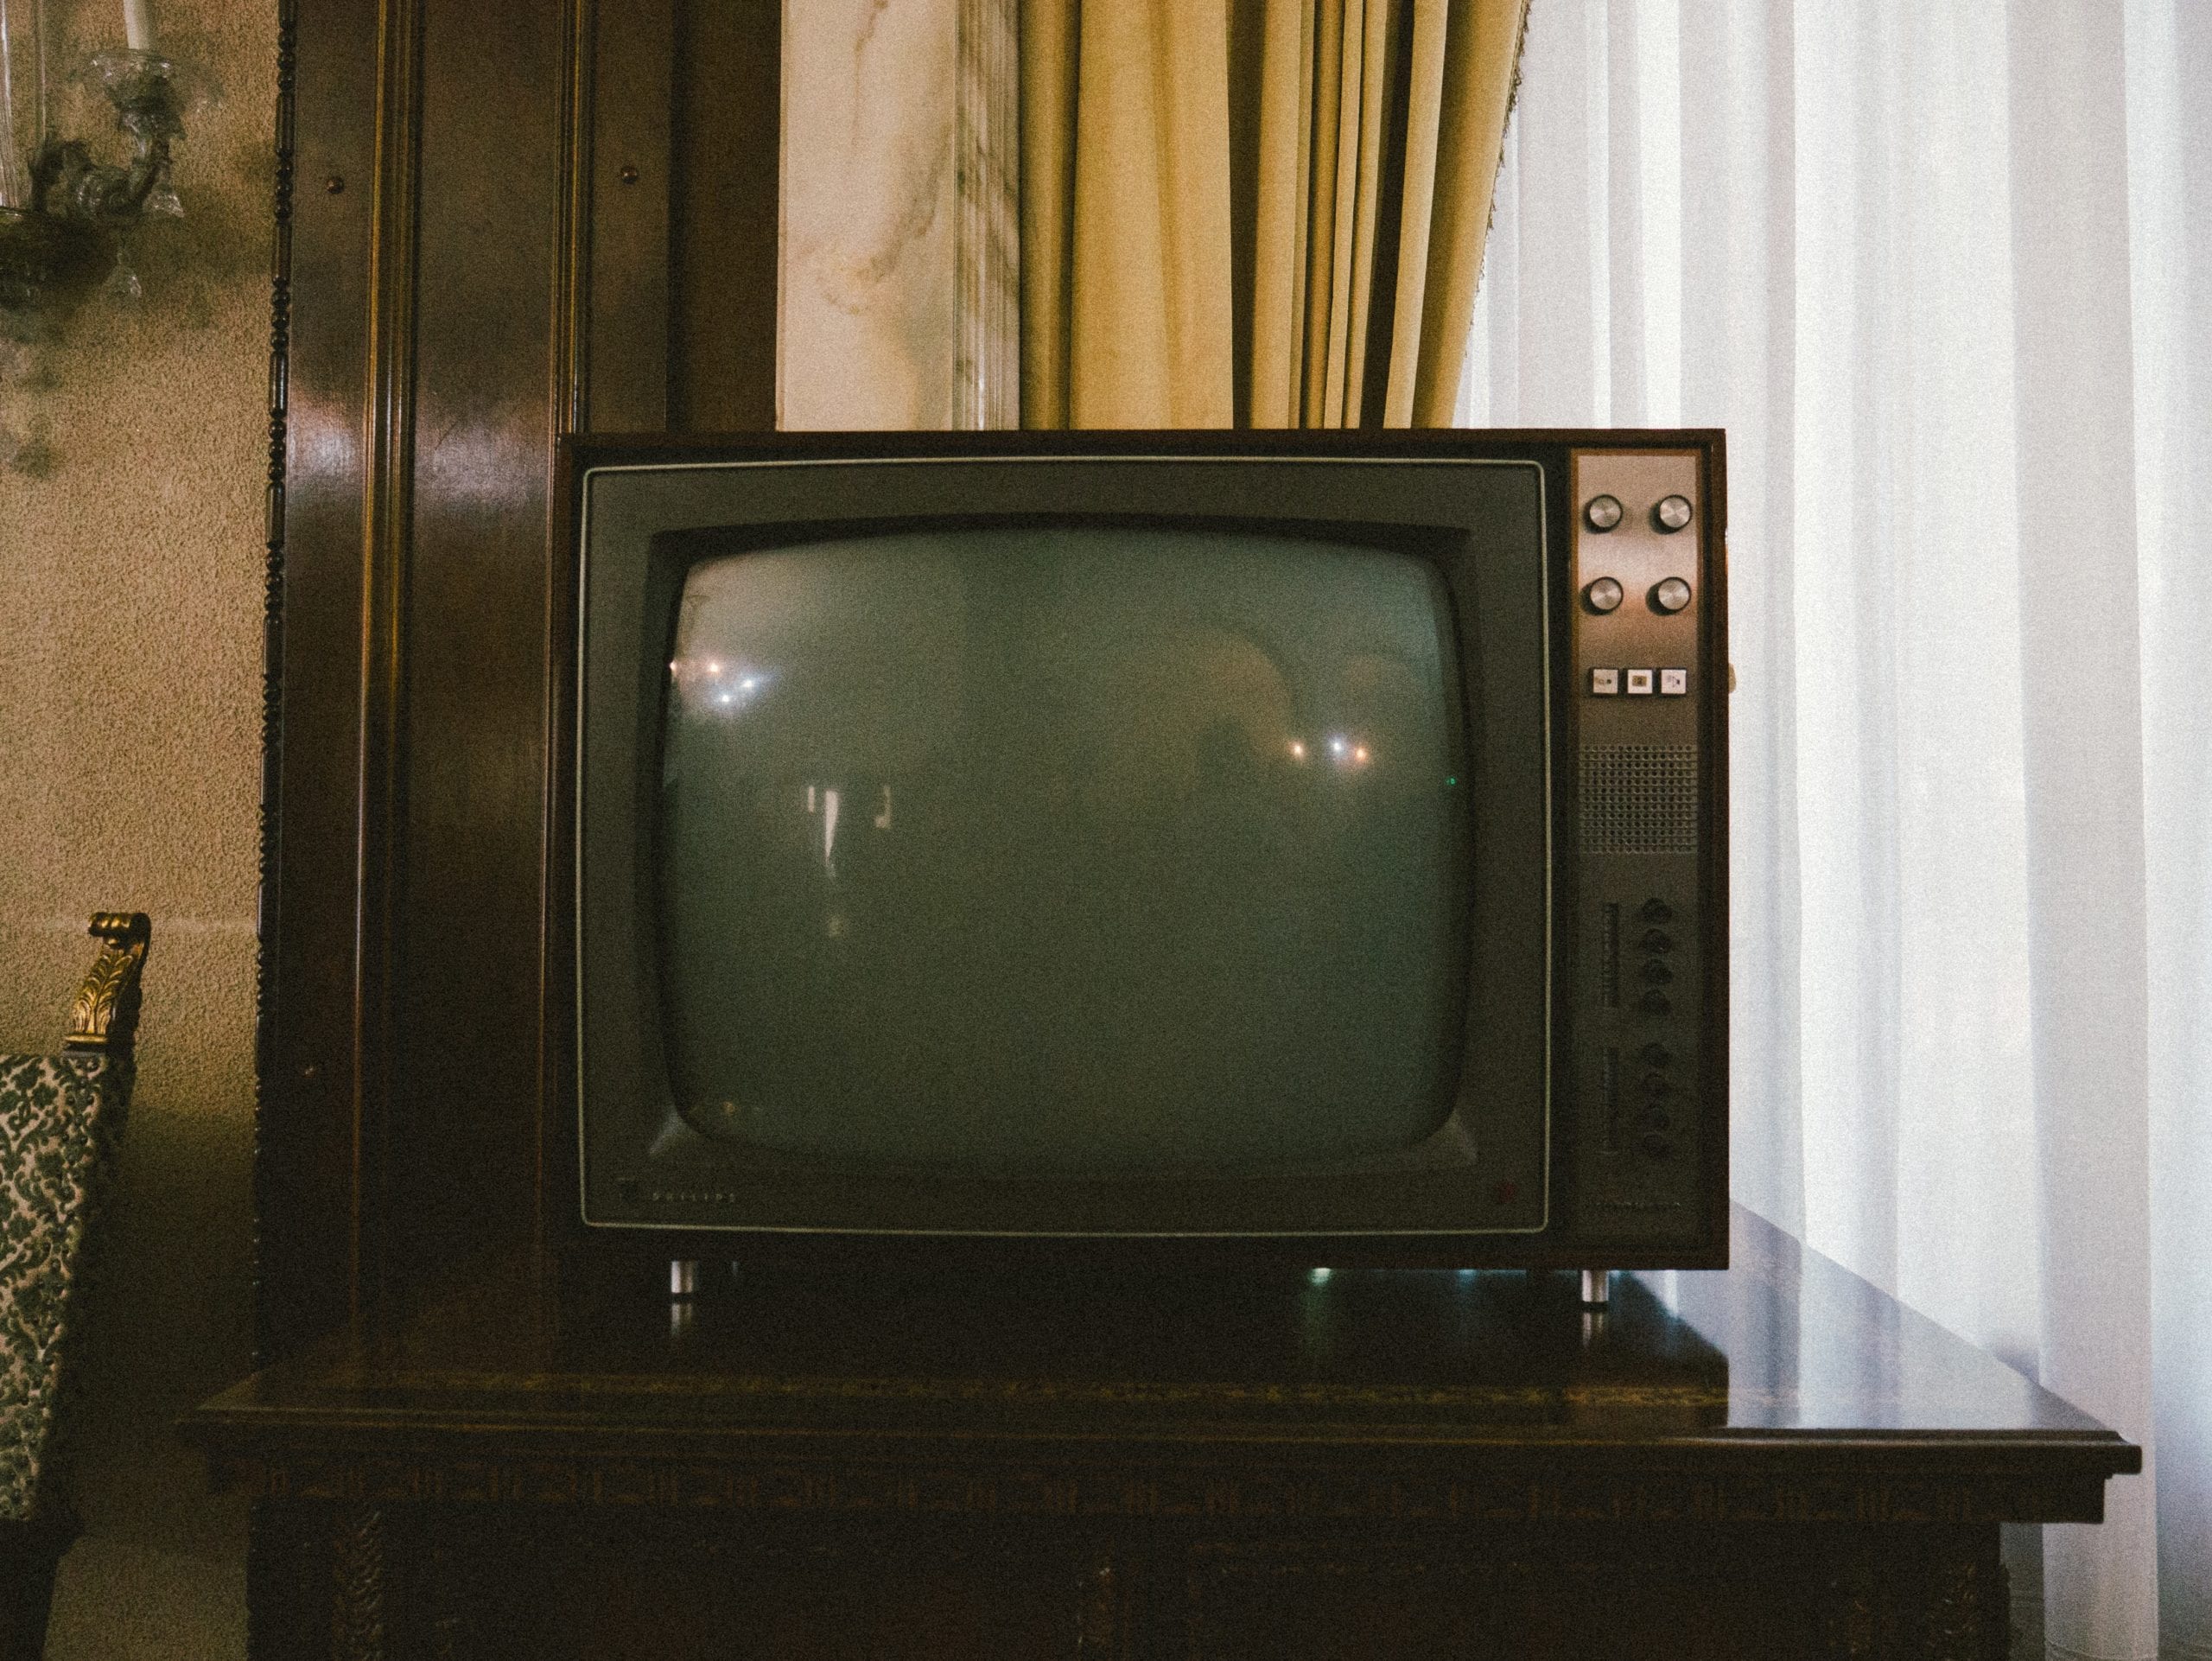 A CRT TV